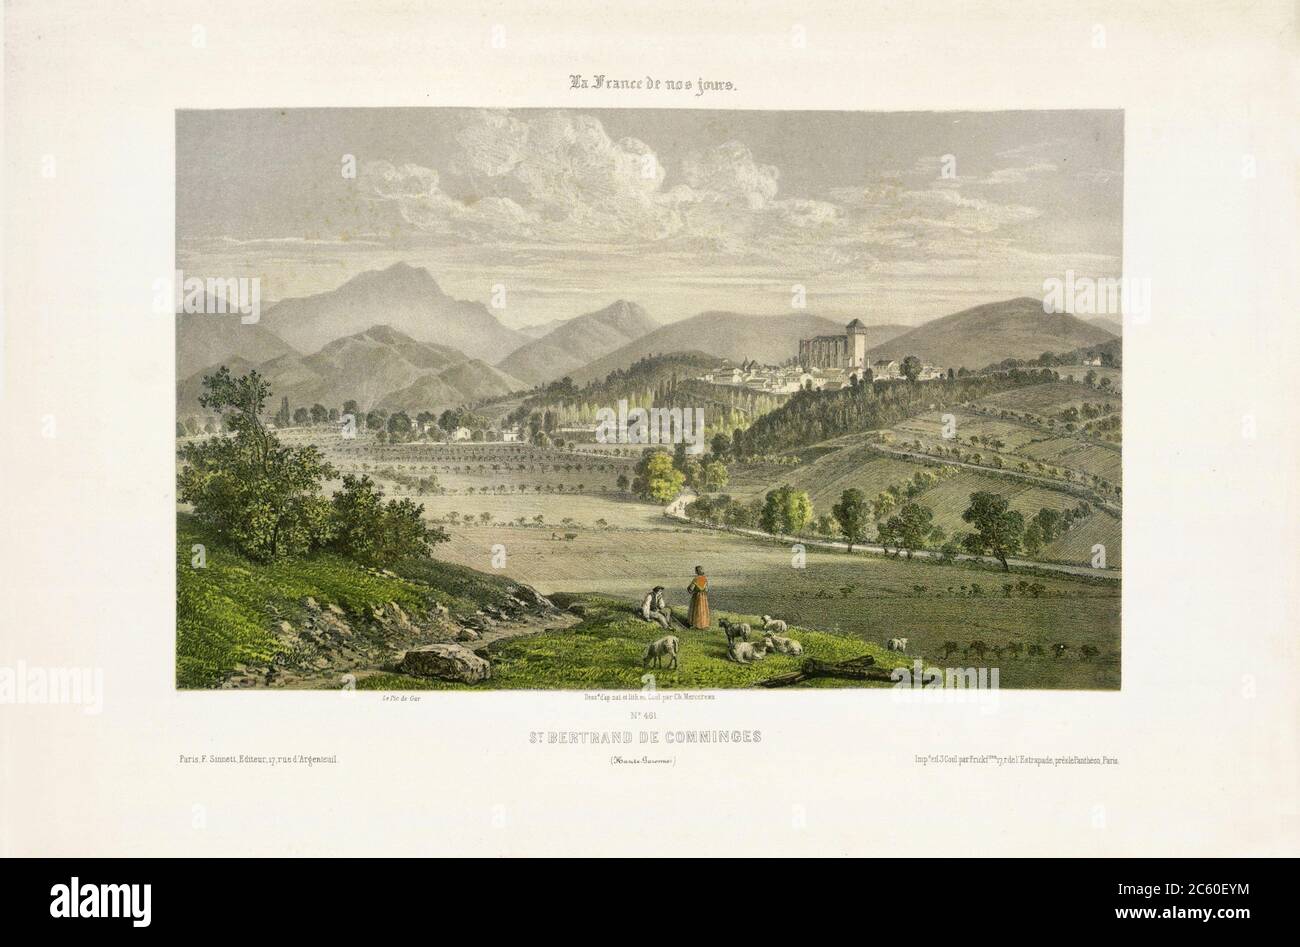 Saint-Bertrand-de-Comminges. Haute-Garonne, Francia. Grabado del siglo 19 Foto de stock